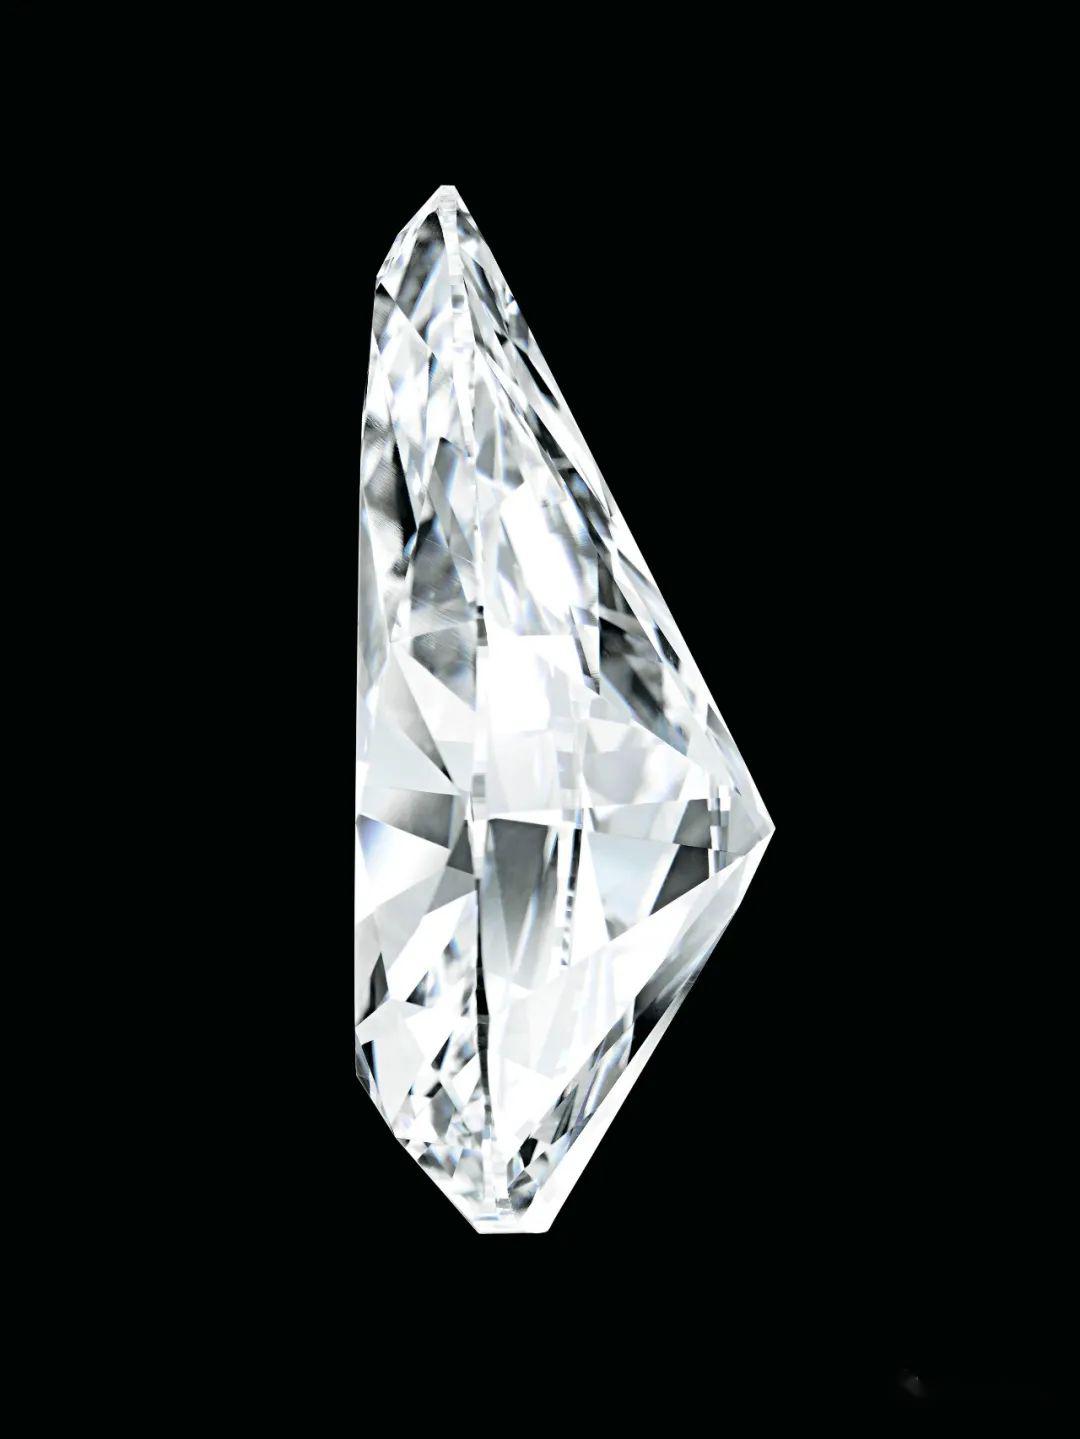 盘点佳士得历年拍卖中最受欢迎的五件梨形钻石拍品